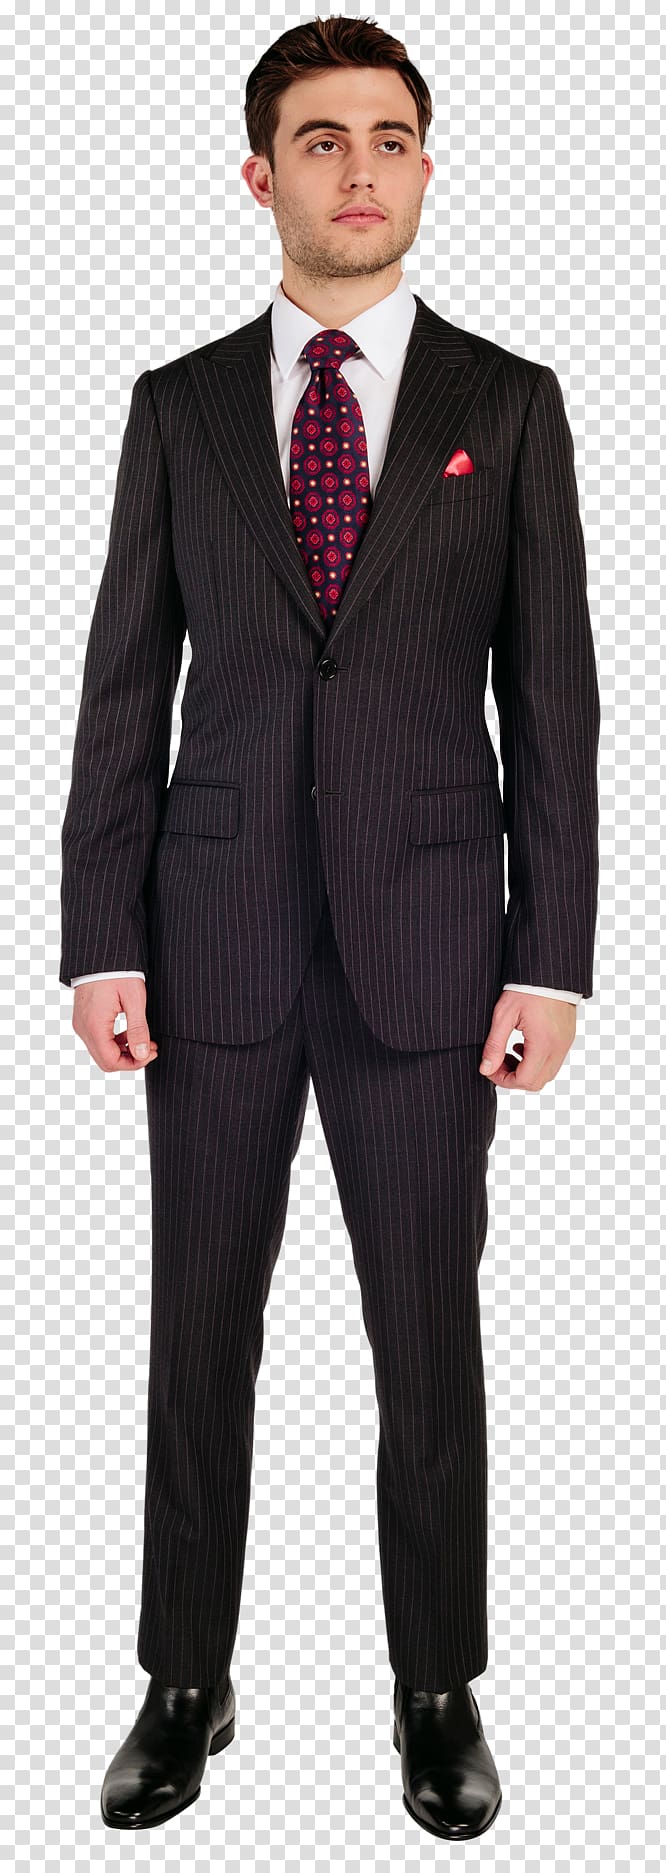 Blazer Sport coat Jacket Suit, Groom suit transparent background PNG clipart